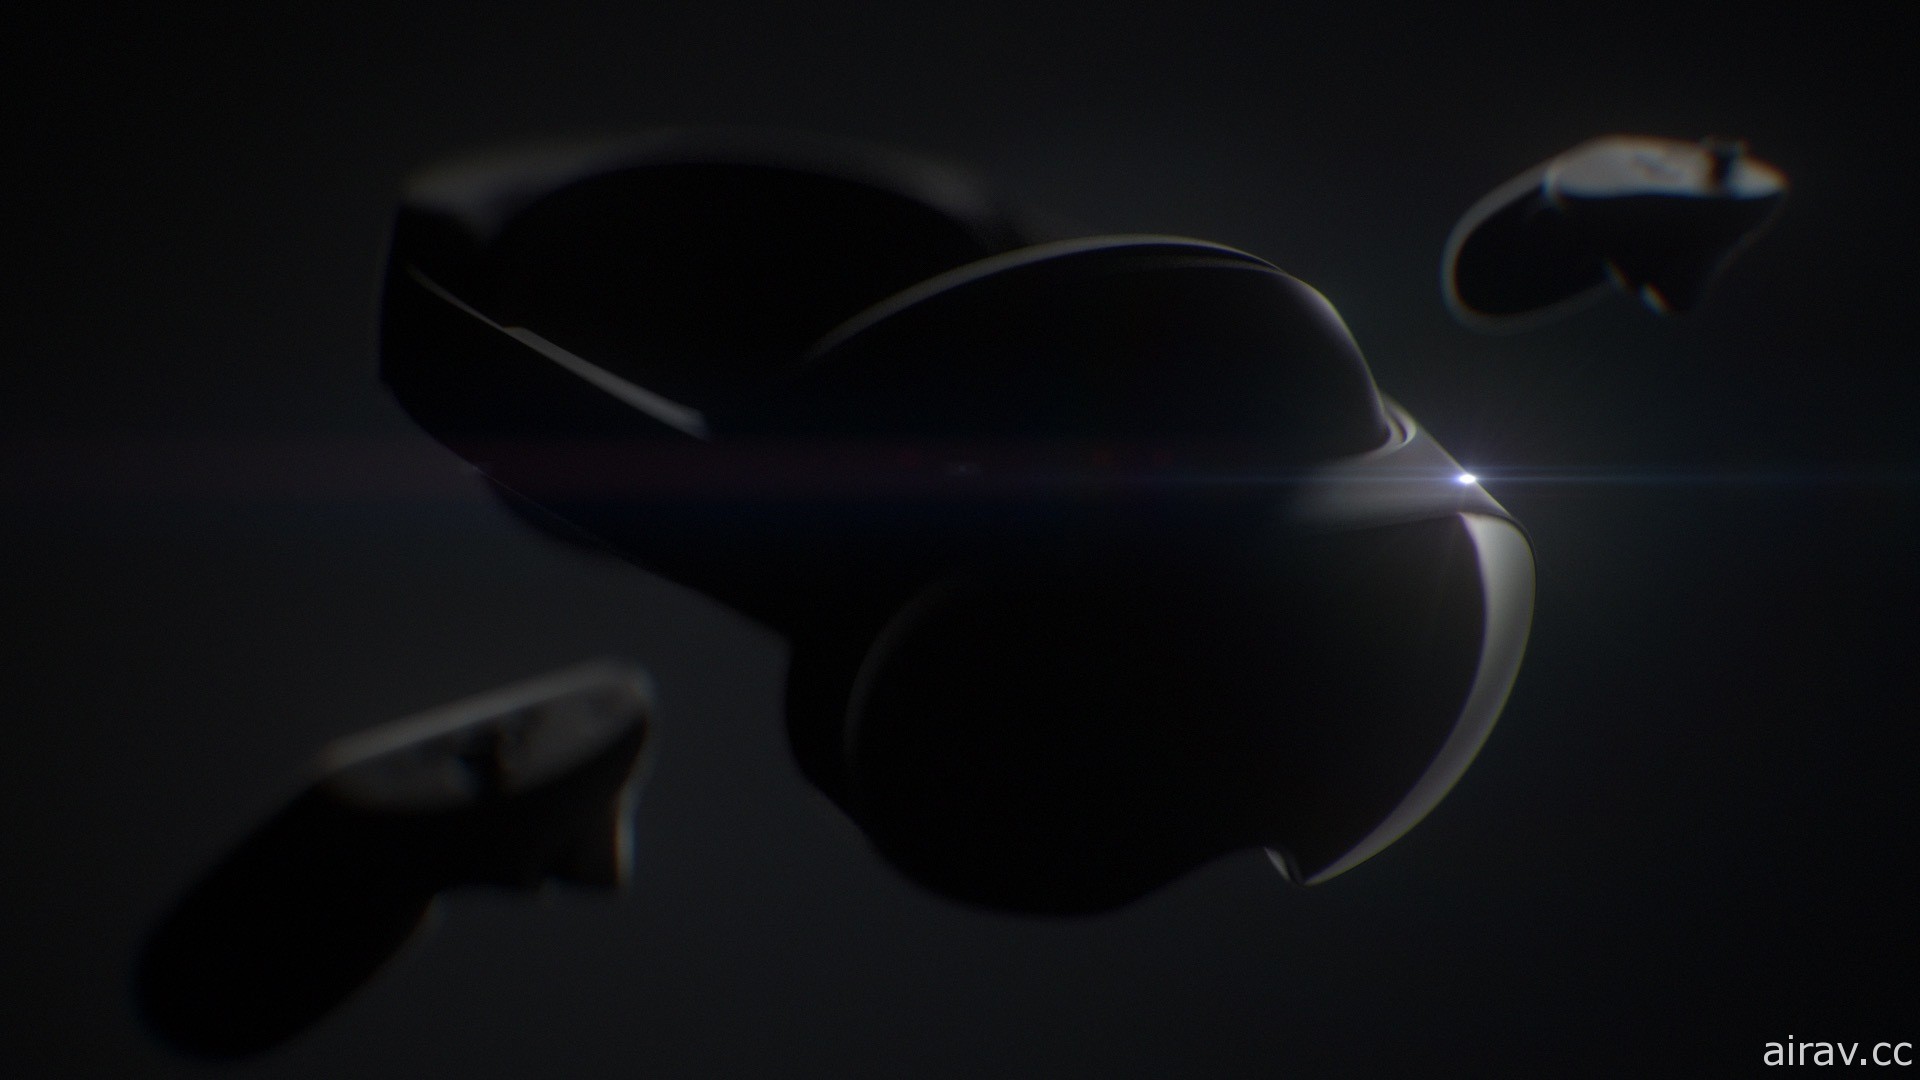 配合元宇宙愿景的高阶 VR 头戴装置“Project Cambria”现正研发中